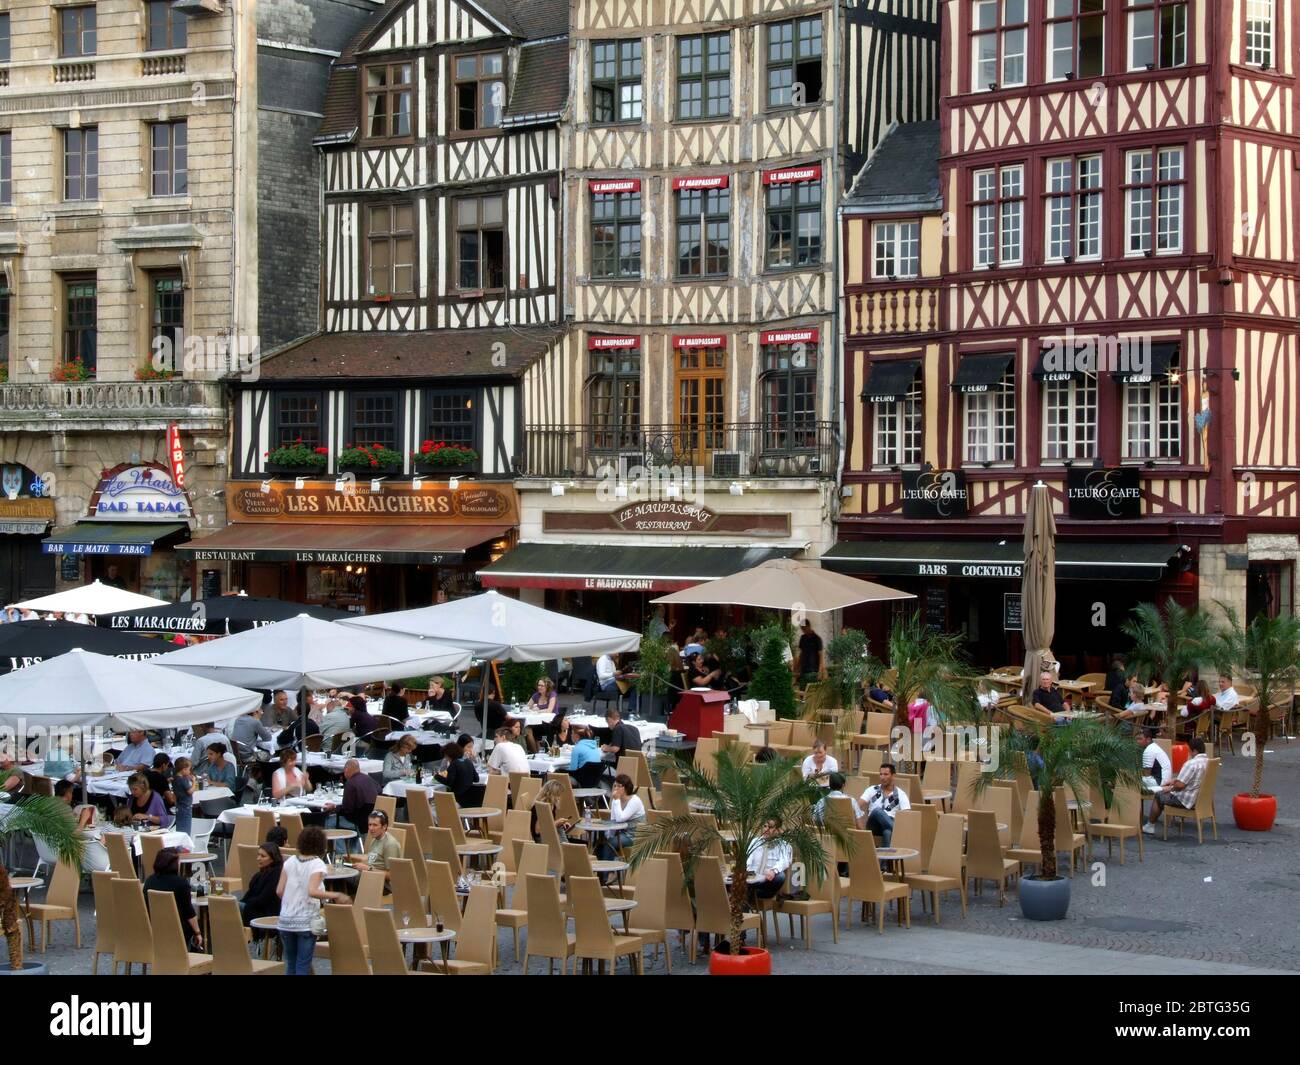 Vieux Marche, Place du Vieux Marché, Rouen, Normandie, France Banque D'Images